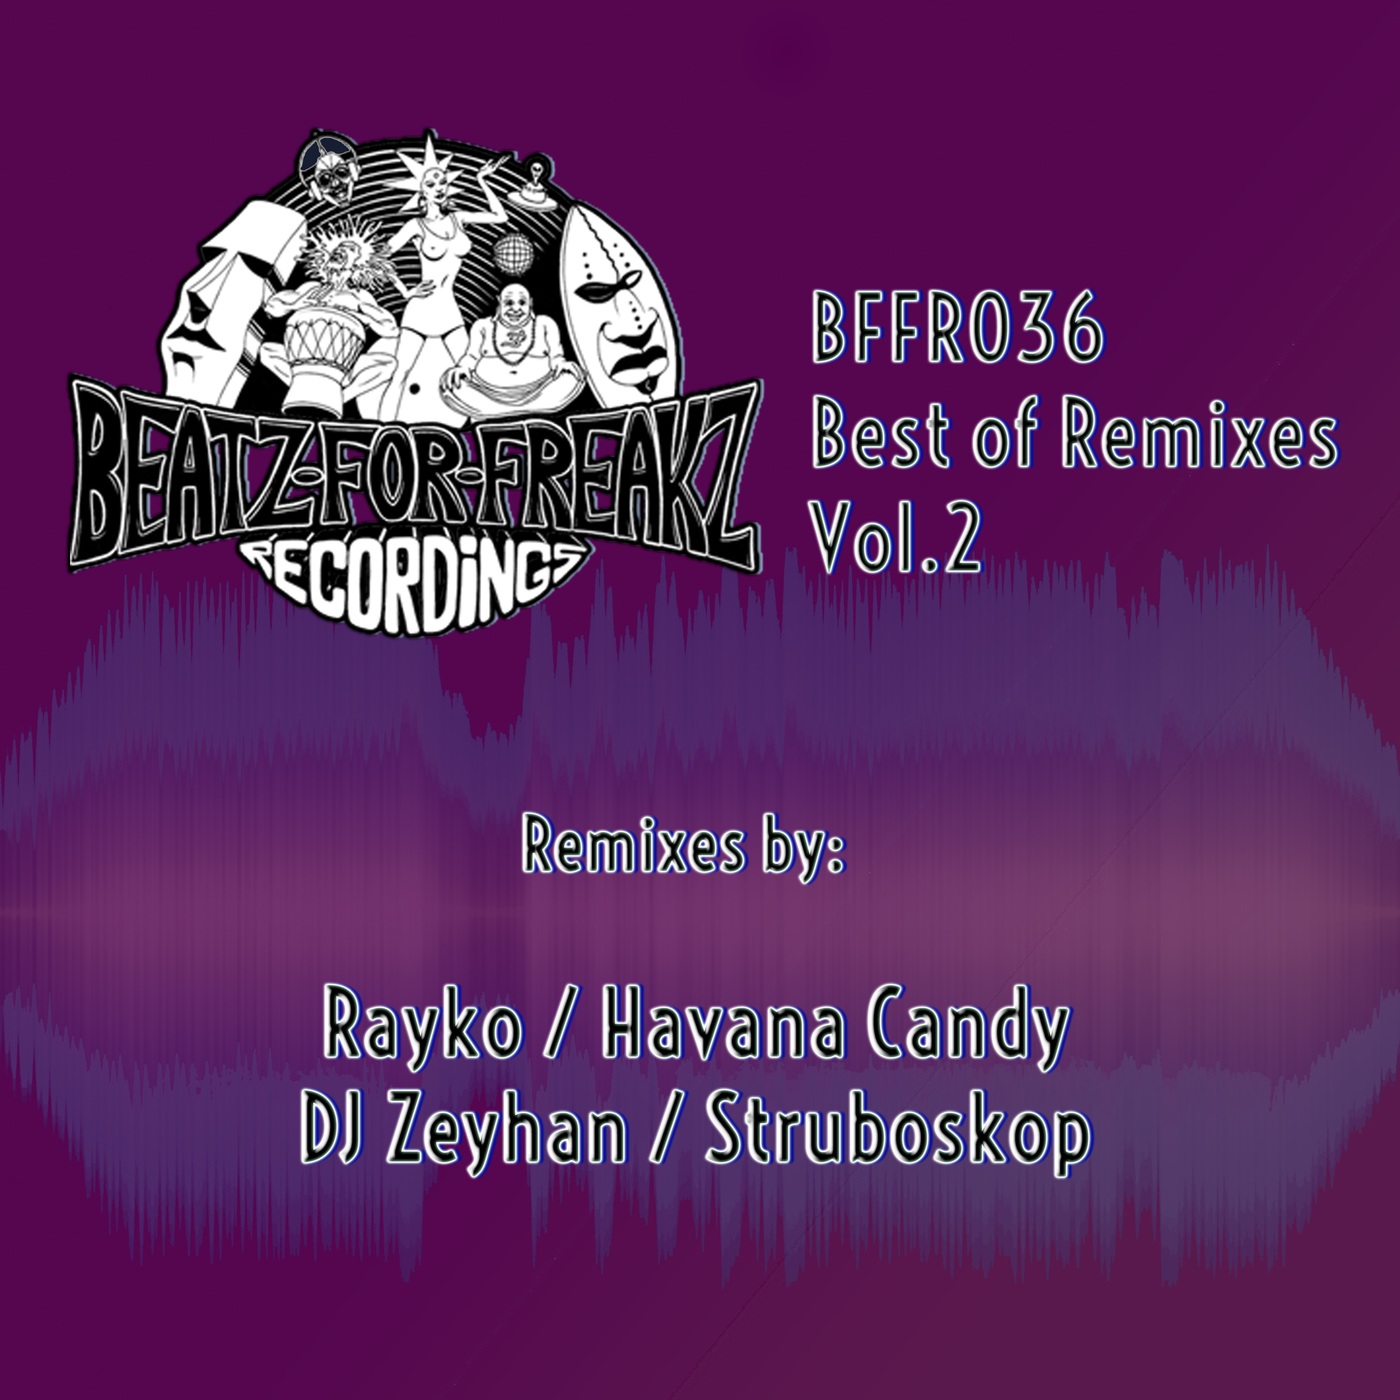 VA - Best of Remixes, Vol. 2 / Beatz for Freakz Recordings